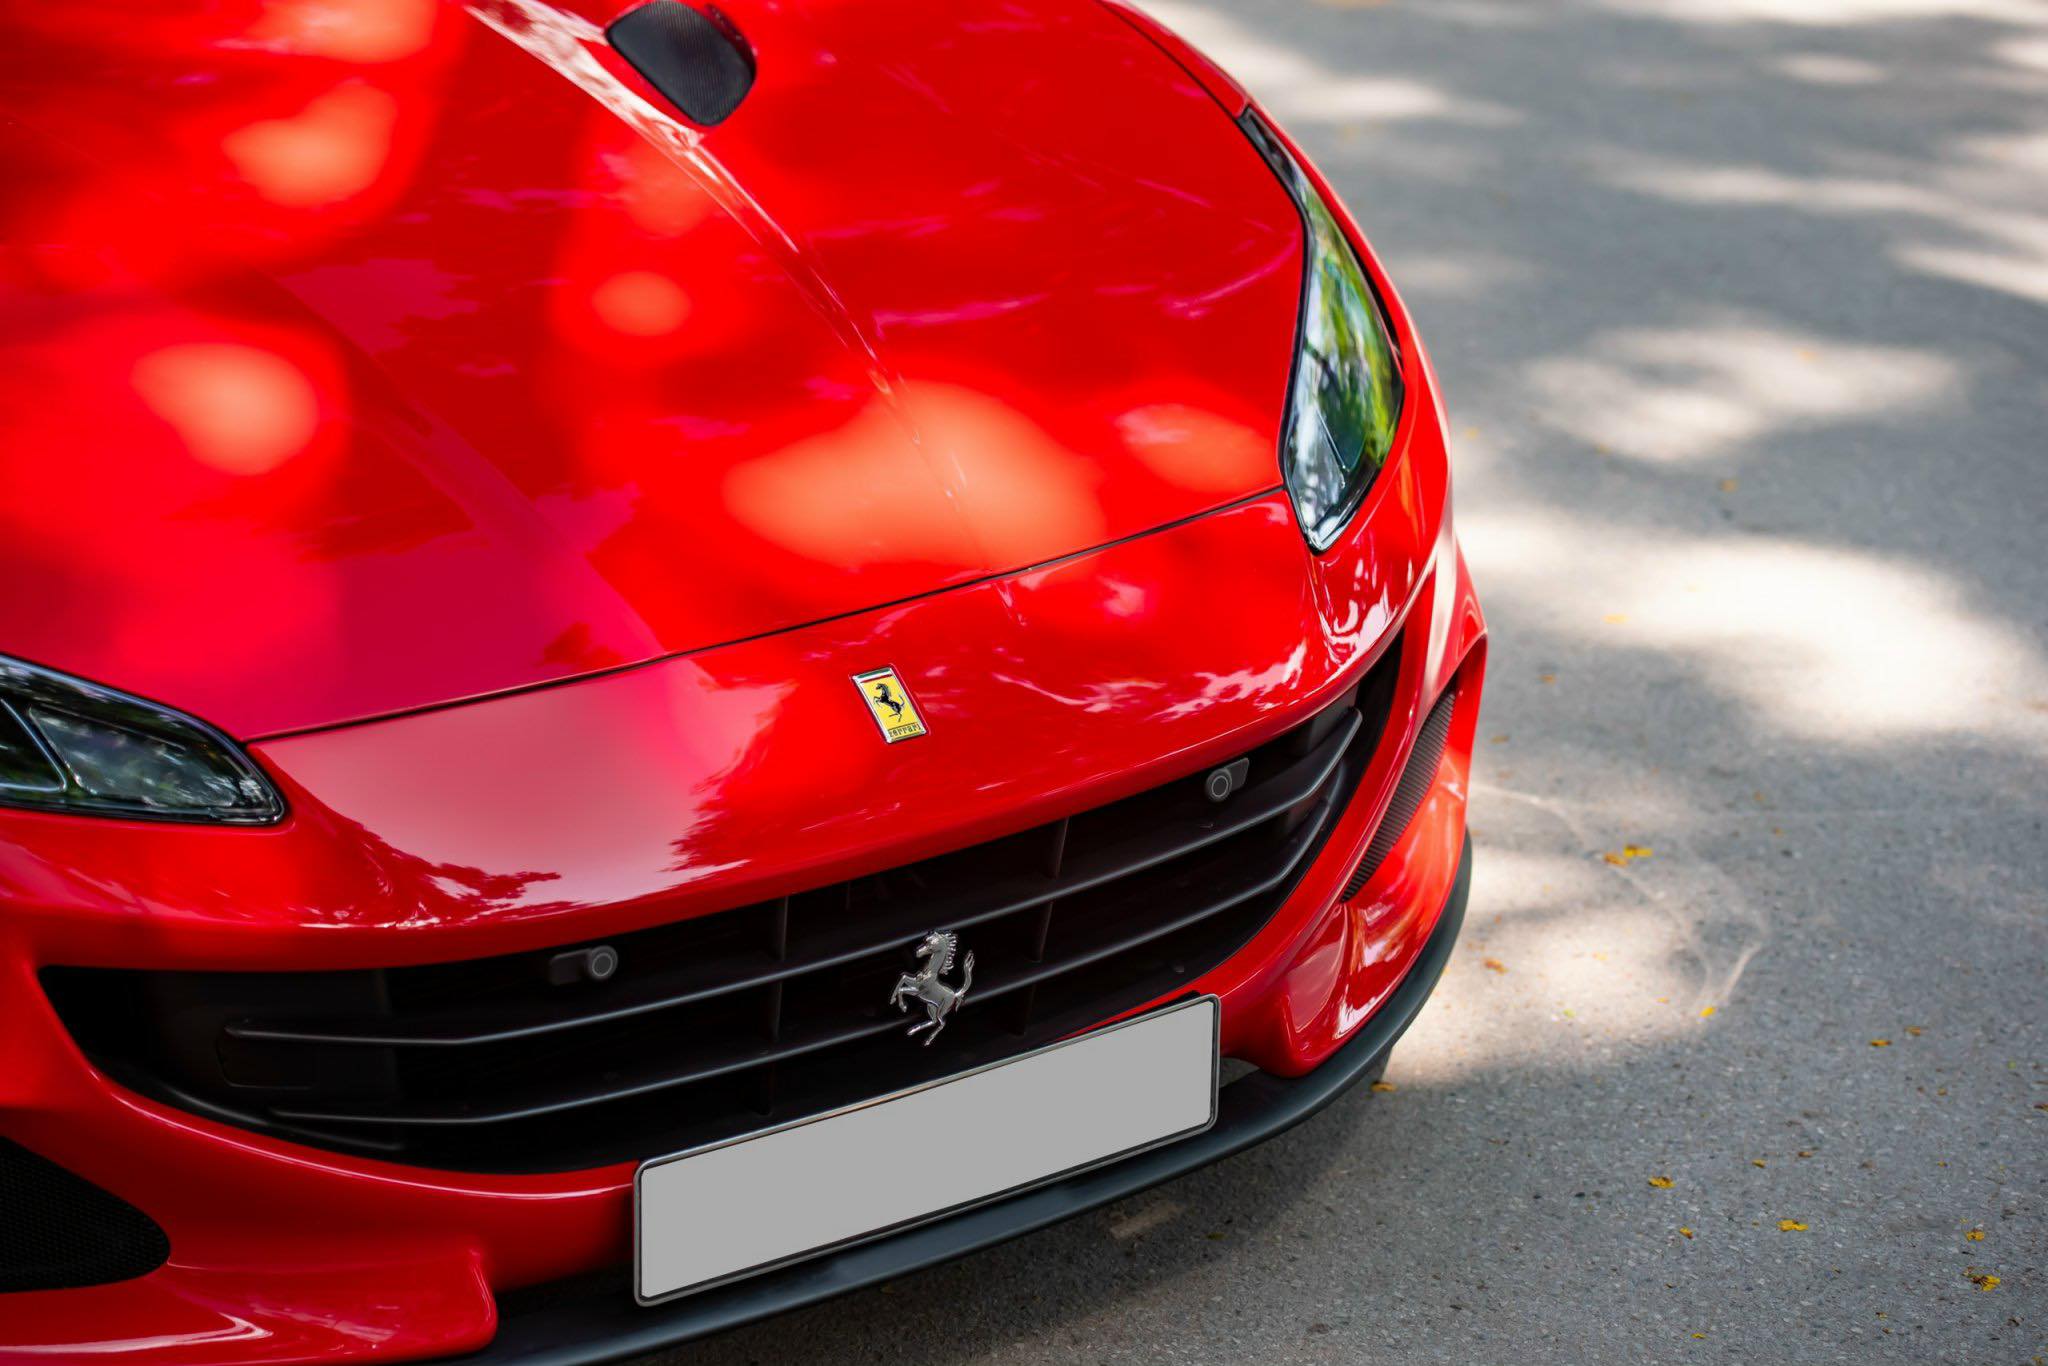 Ferrari Portofino M tìm được chủ nhân sau cả năm lên sàn xe cũ, người bán chia sẻ: Khách hàng hỏi mua và chuyển cọc chỉ trong 2 tiếng, giao xe ngay chiều hôm sau- Ảnh 7.